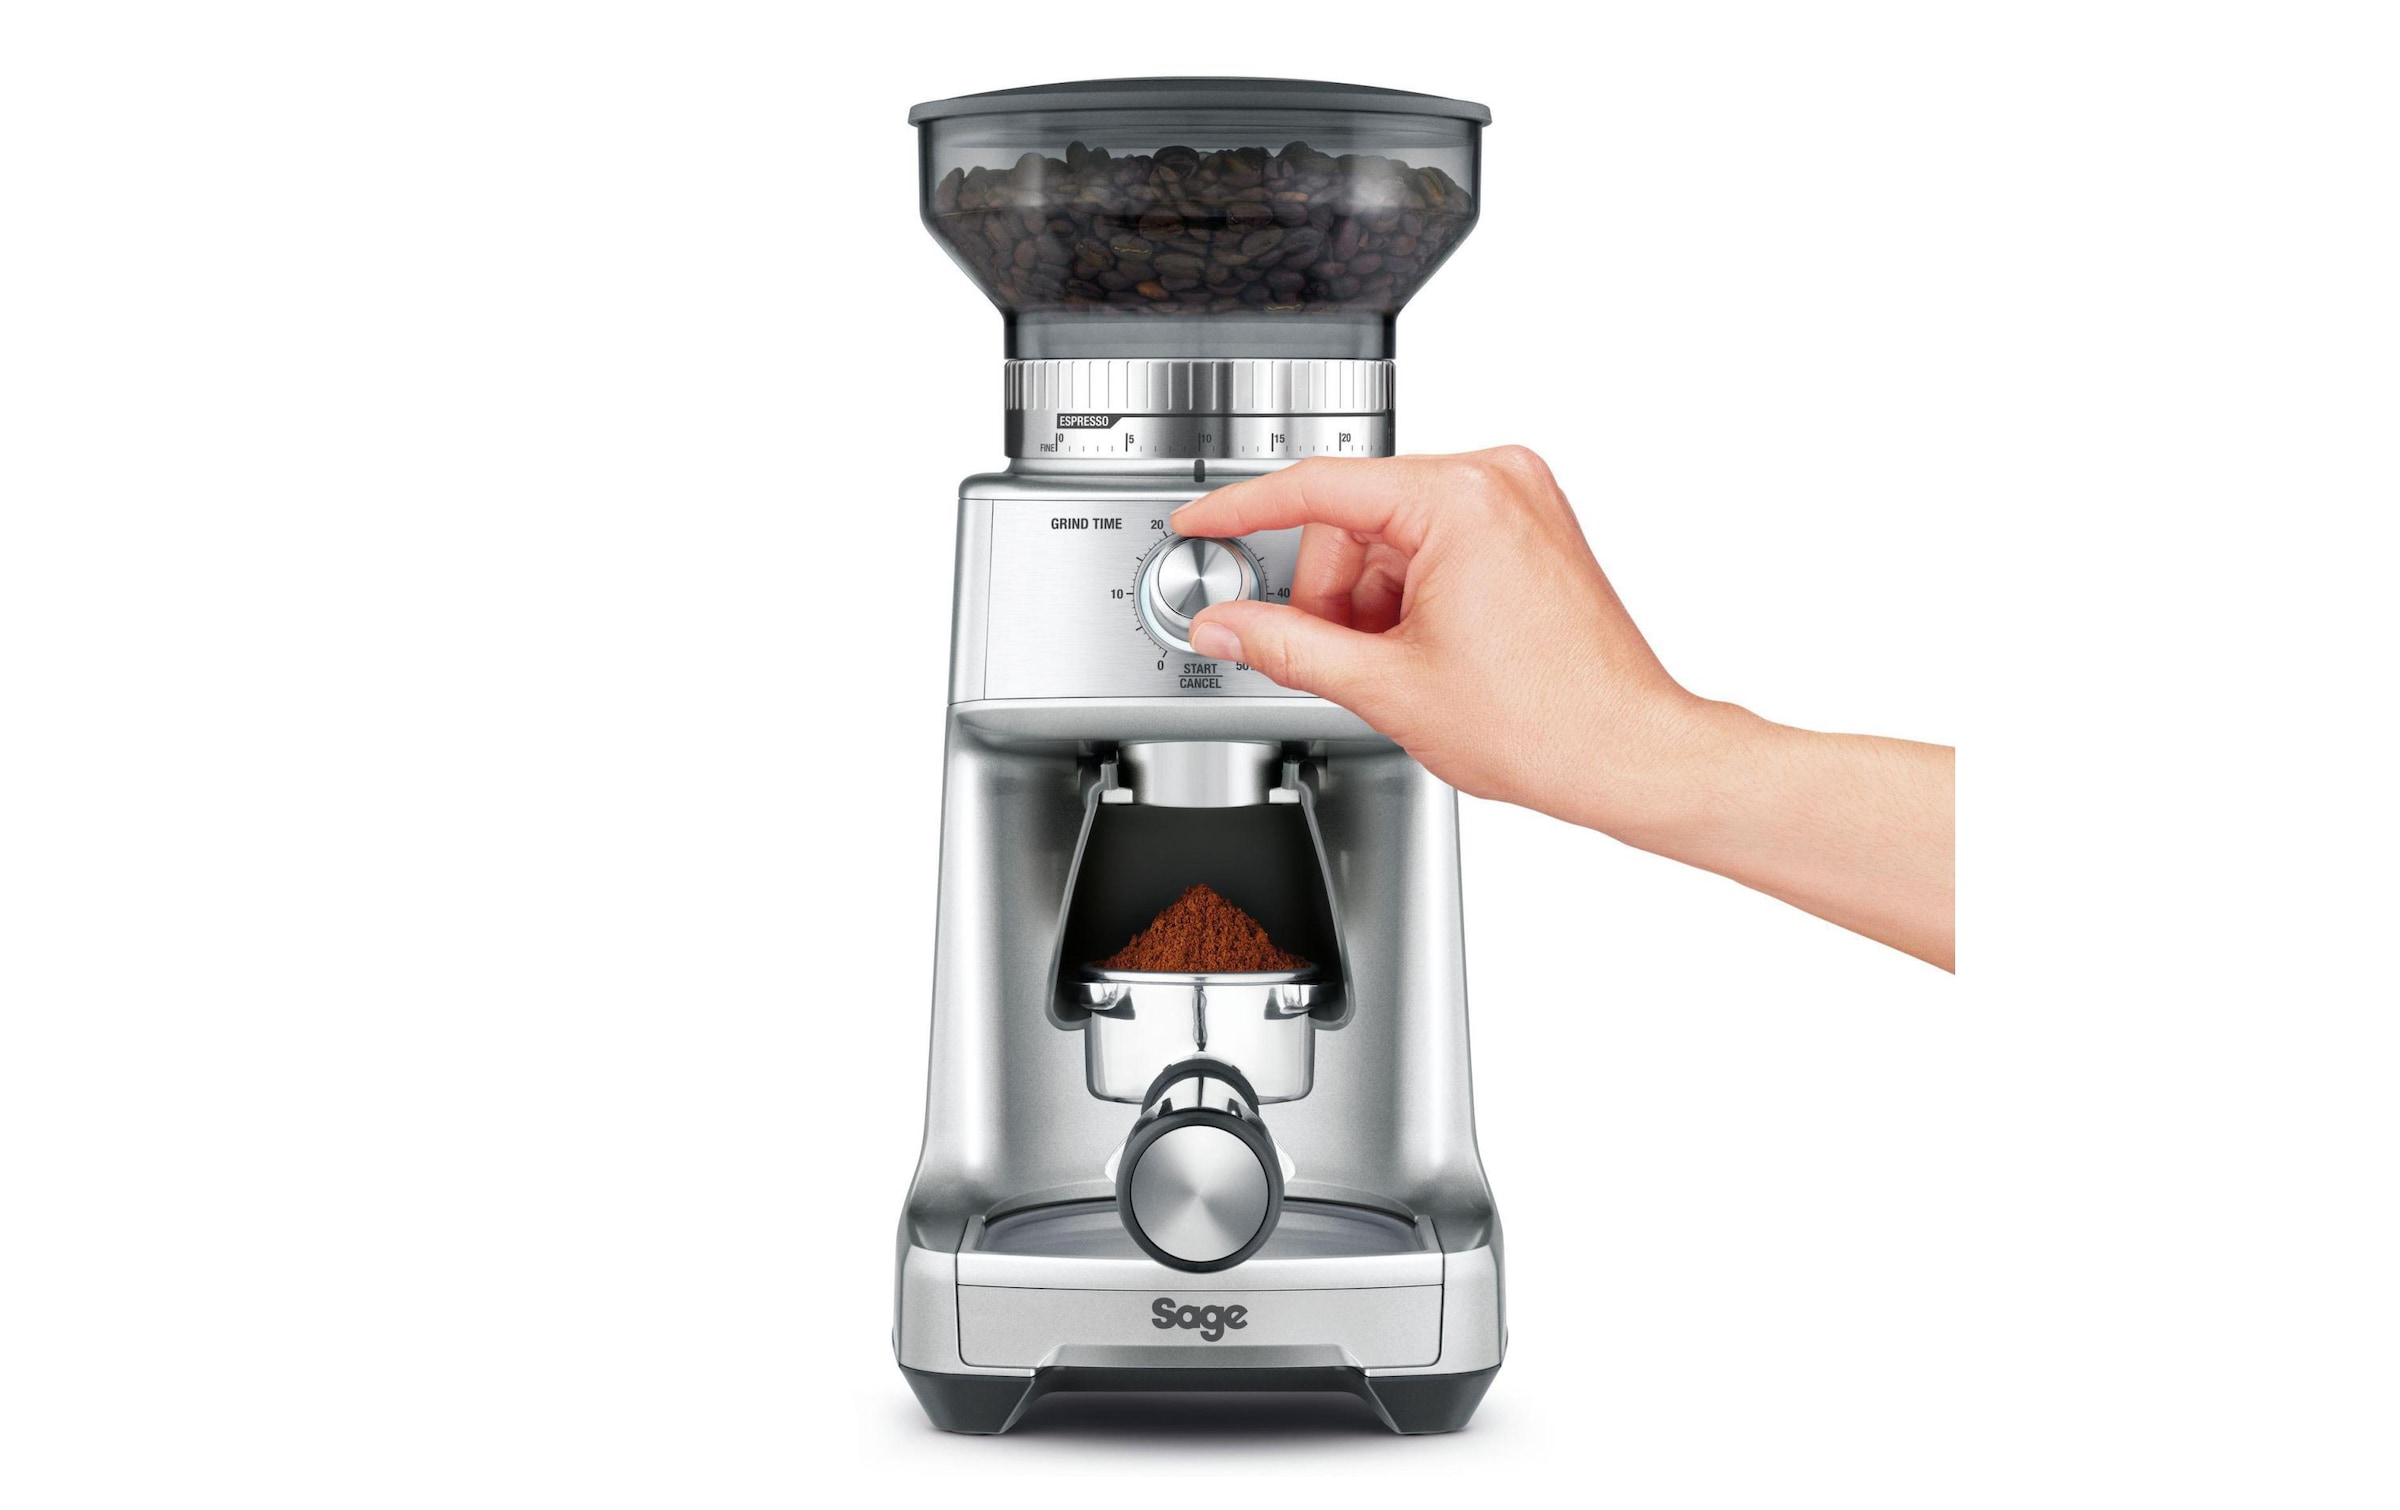 Sage Kaffeemühle »Dose Control Pro«, 130 W, 340 g Bohnenbehälter